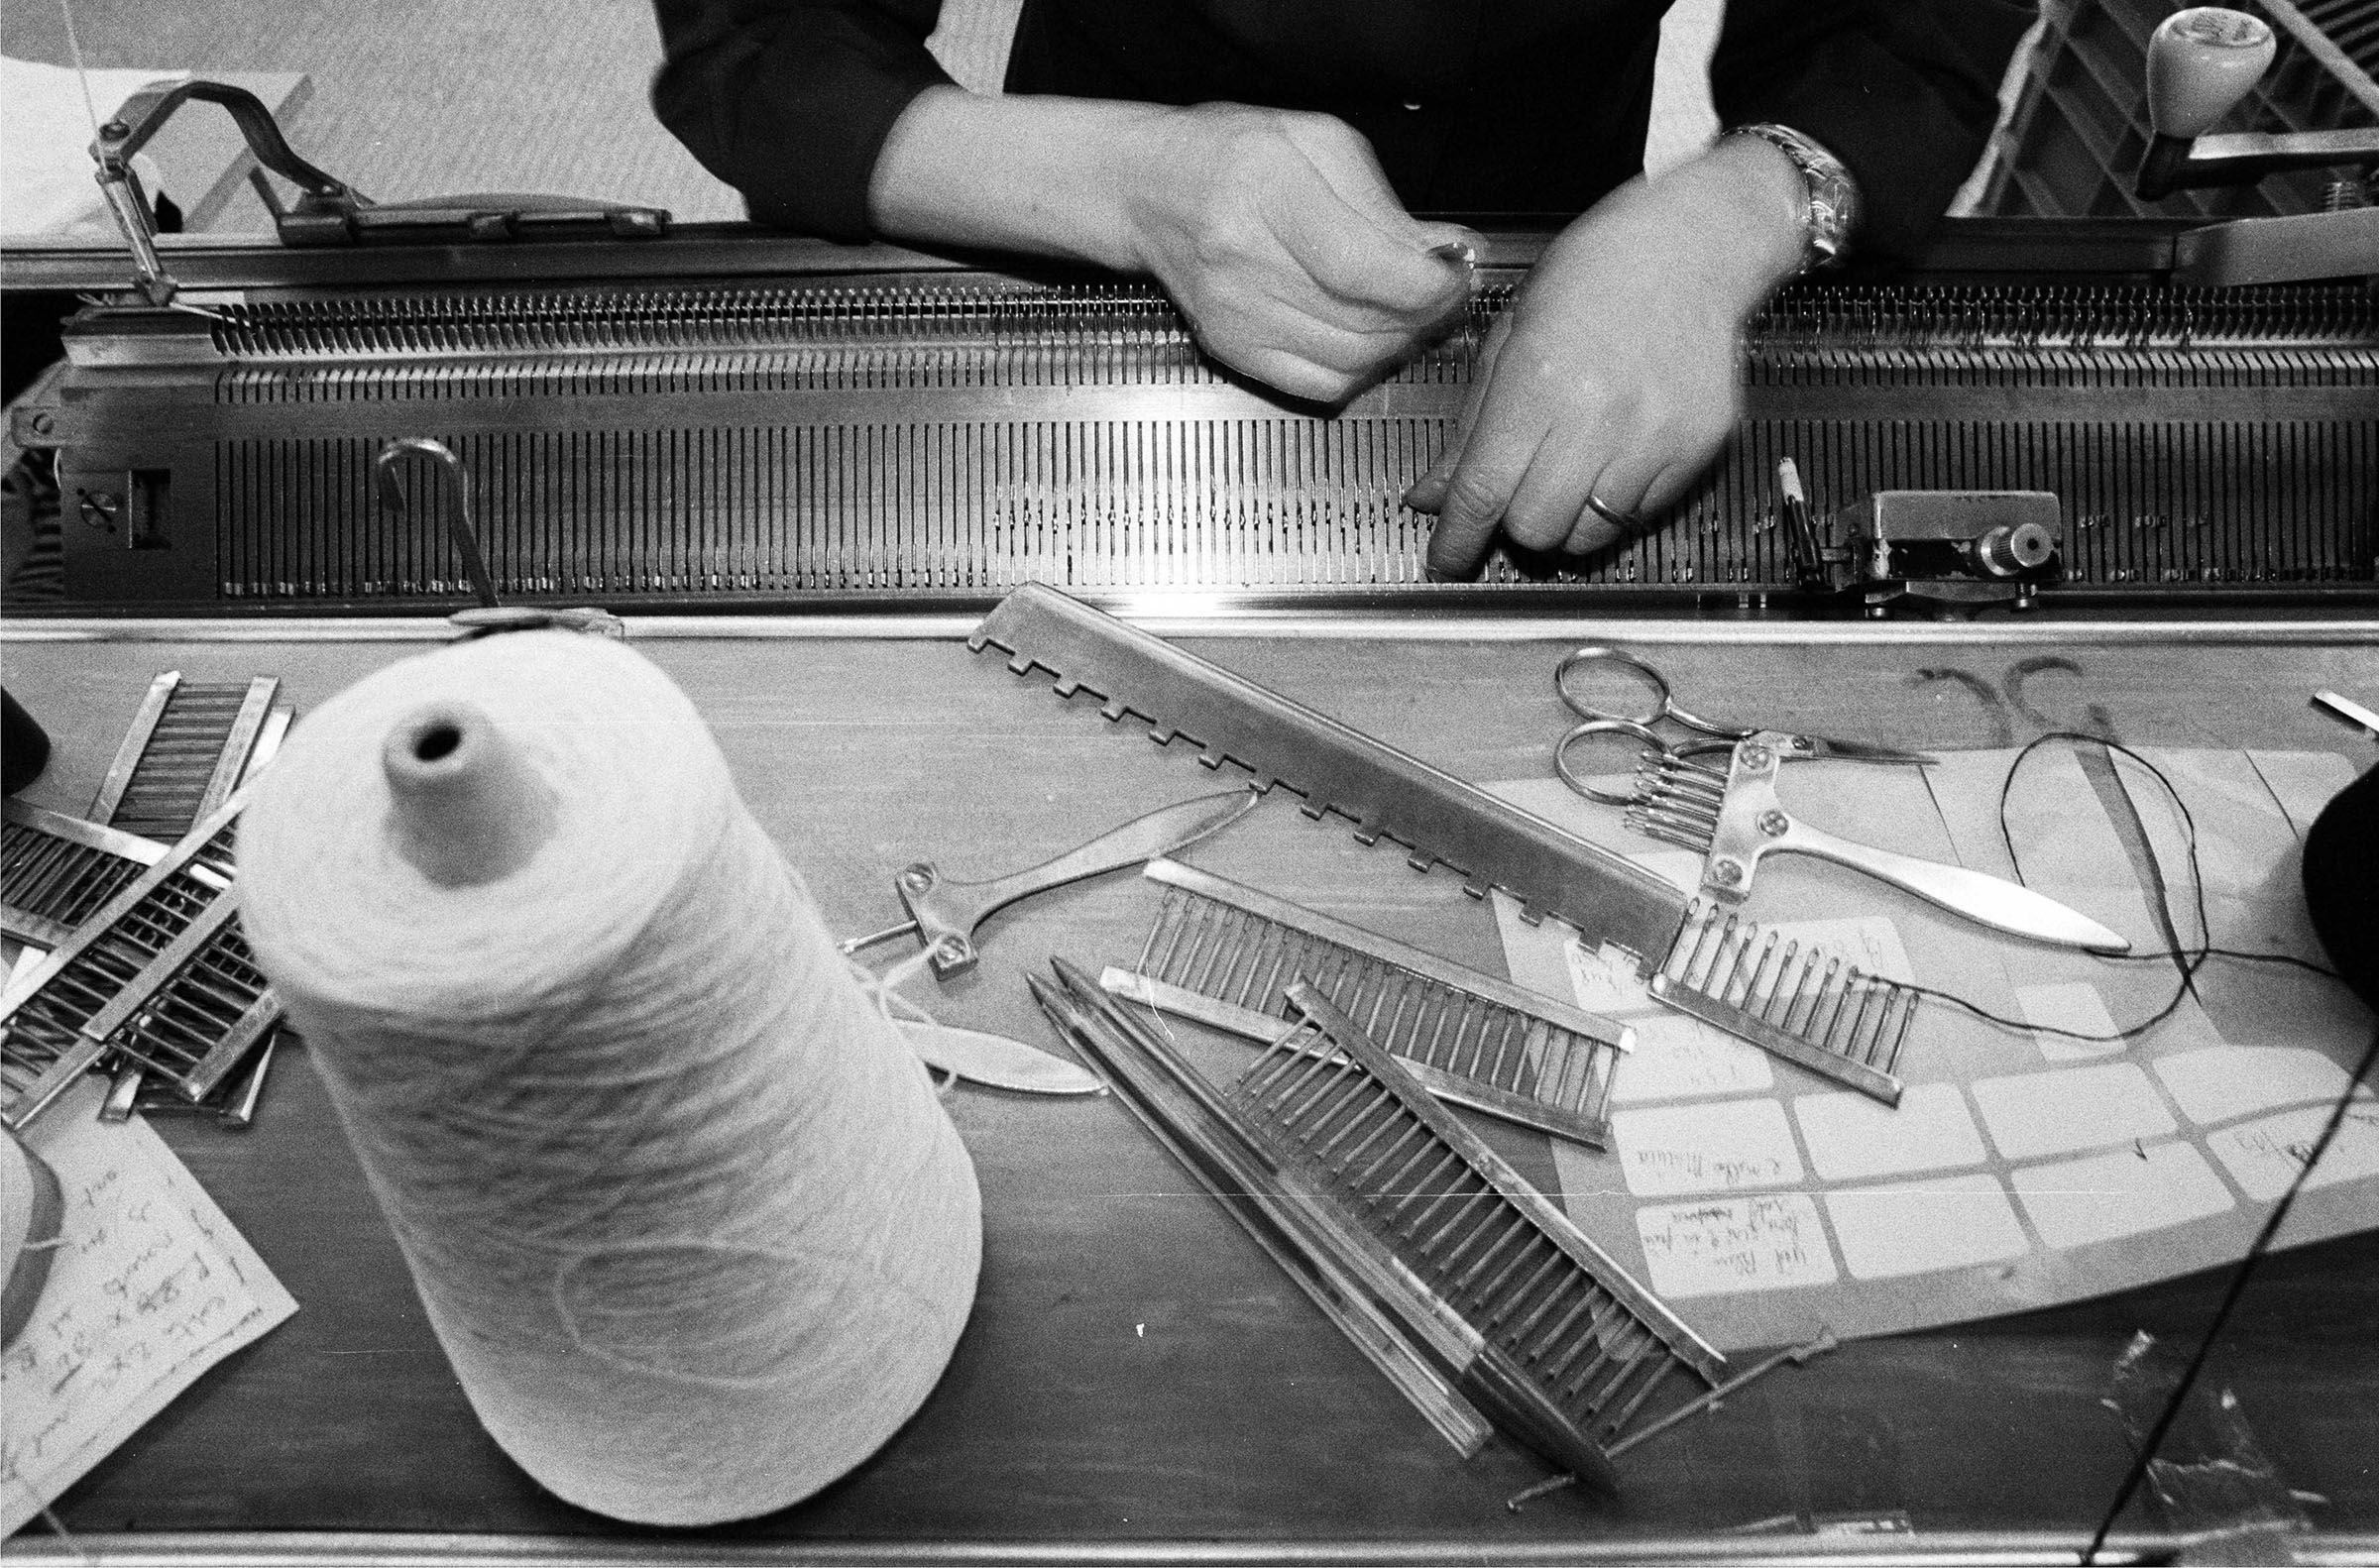 Solo la maglia. A Carpi le foto di Ferdinando Scianna raccontano l’arte tessile del territorio